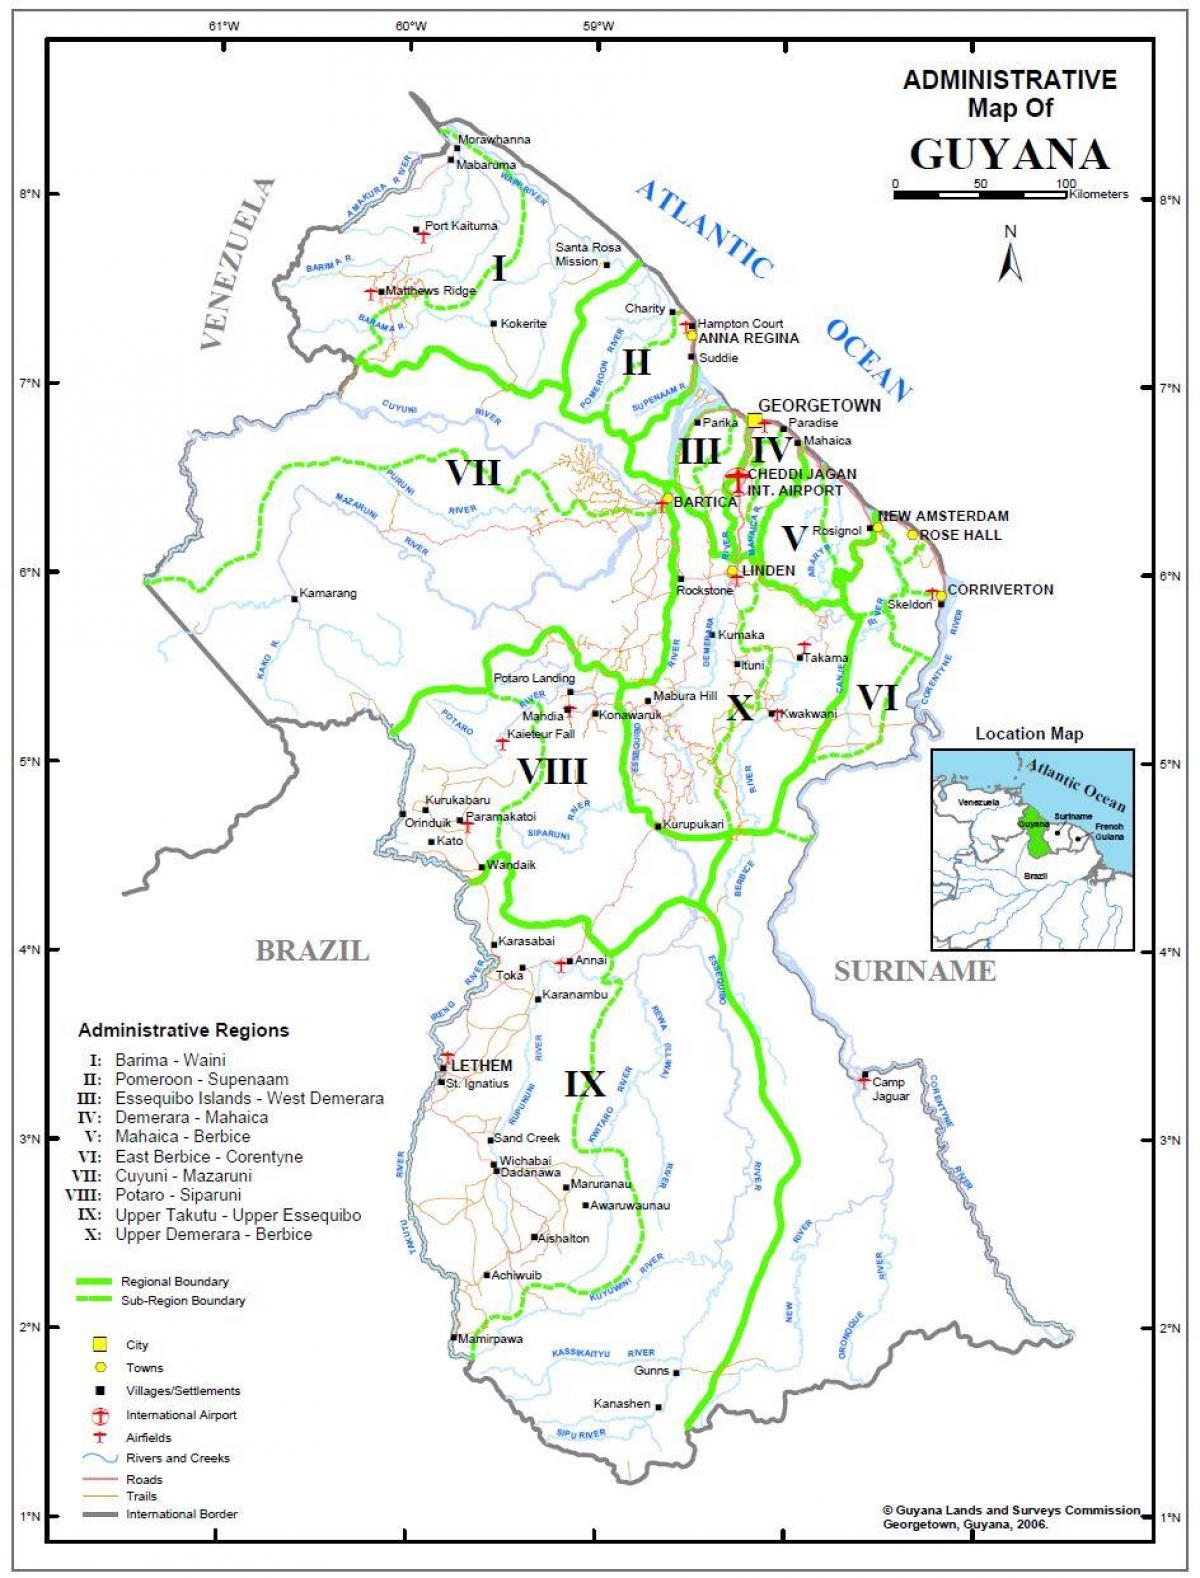 χάρτης της Γουιάνας που δείχνει τις δέκα διοικητικές περιφέρειες